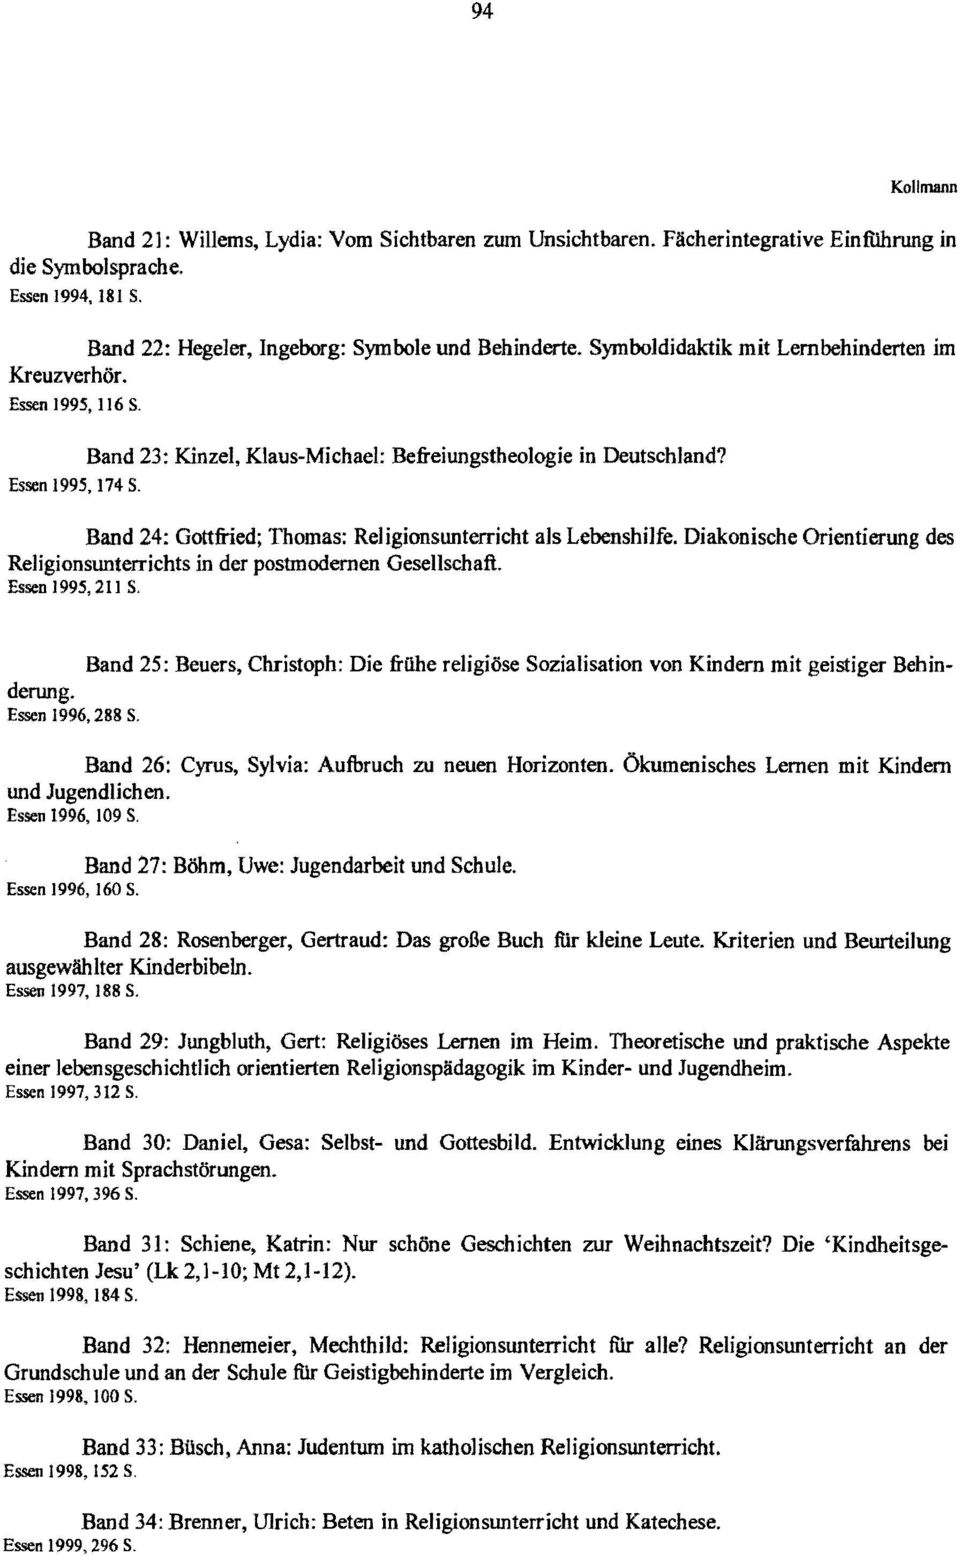 Band 24: Gottfried; Thomas: Religionsunterricht als Lebenshilfe. Diakonische Orientierung des Religionsunterrichts in der postmodernen Gesellschaft. Essen 1995,211 S.